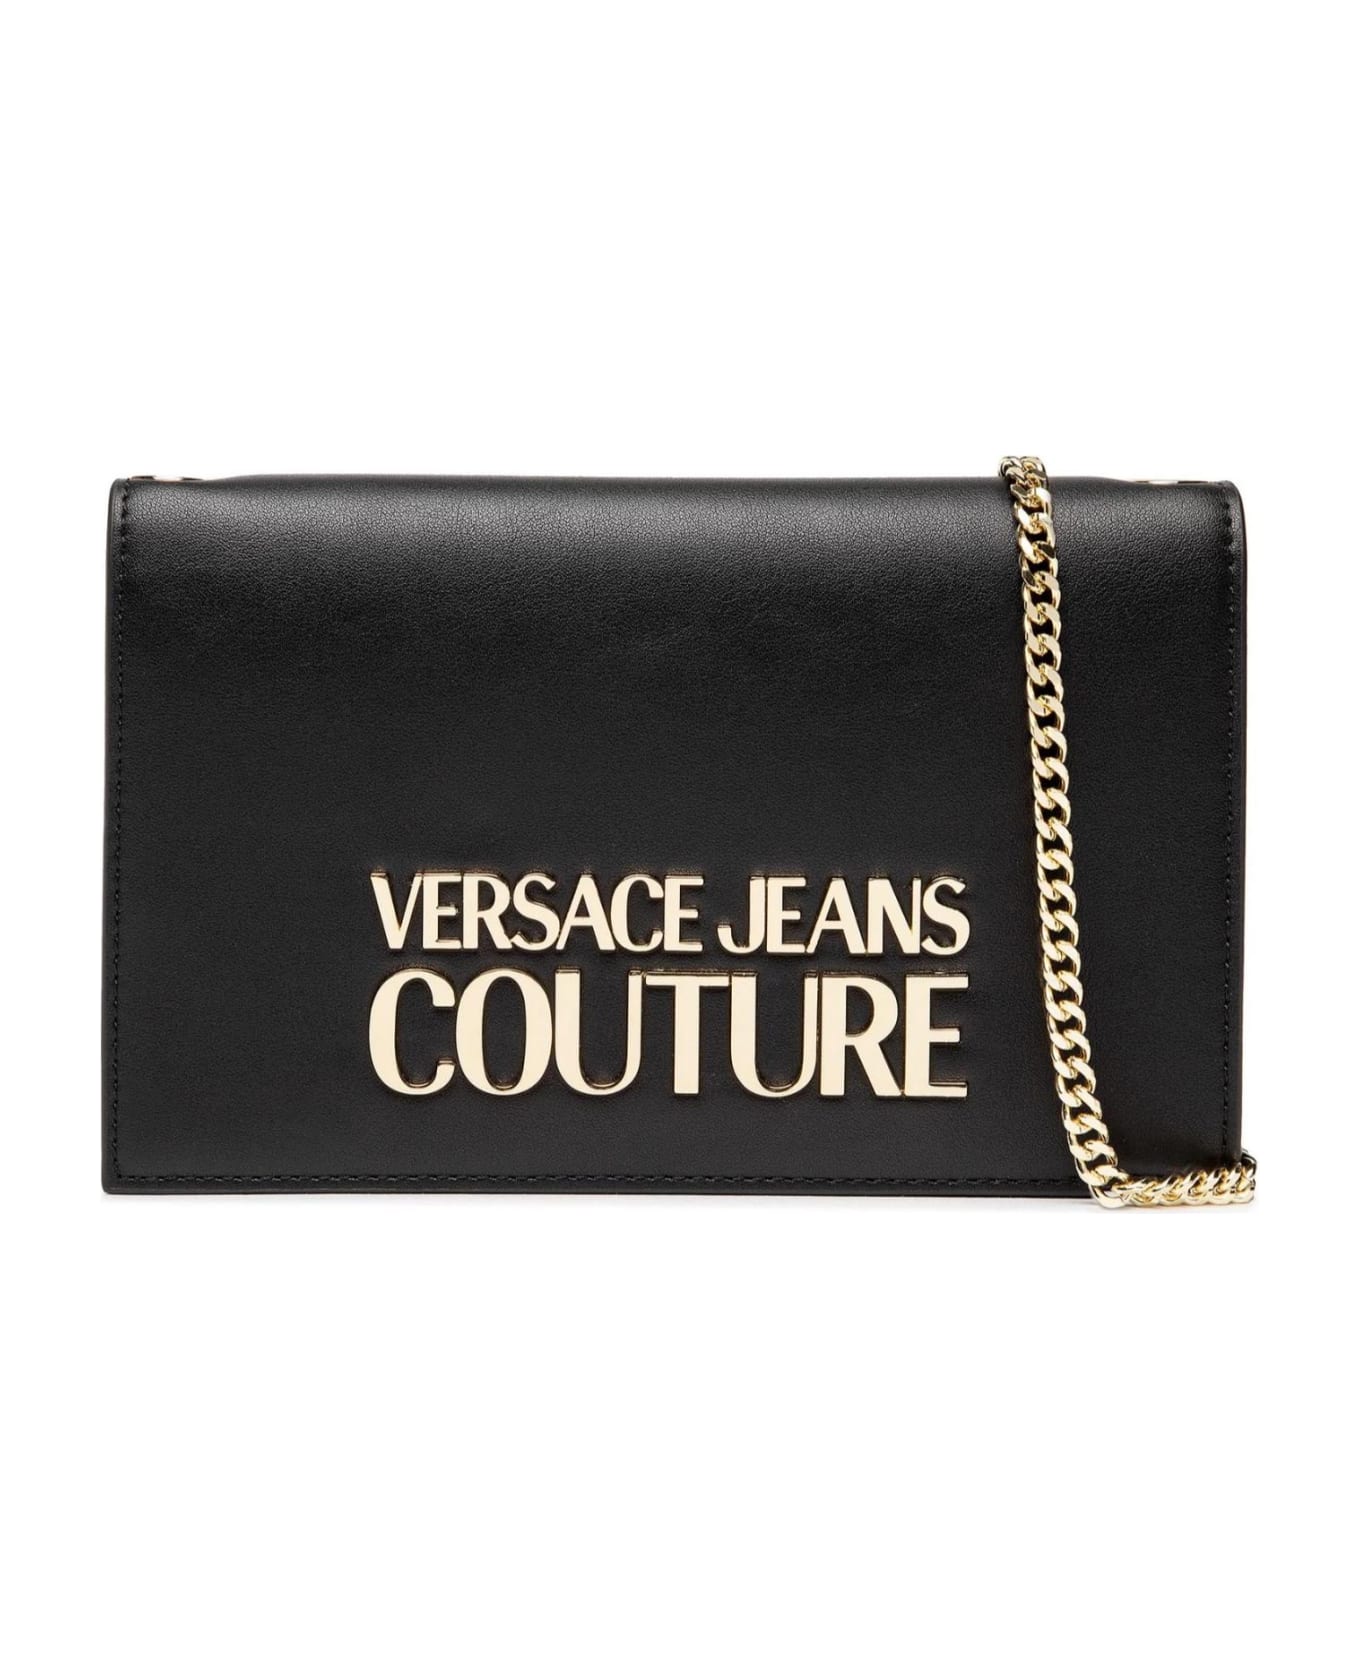 Versace Jeans Couture Black Wallet - Black